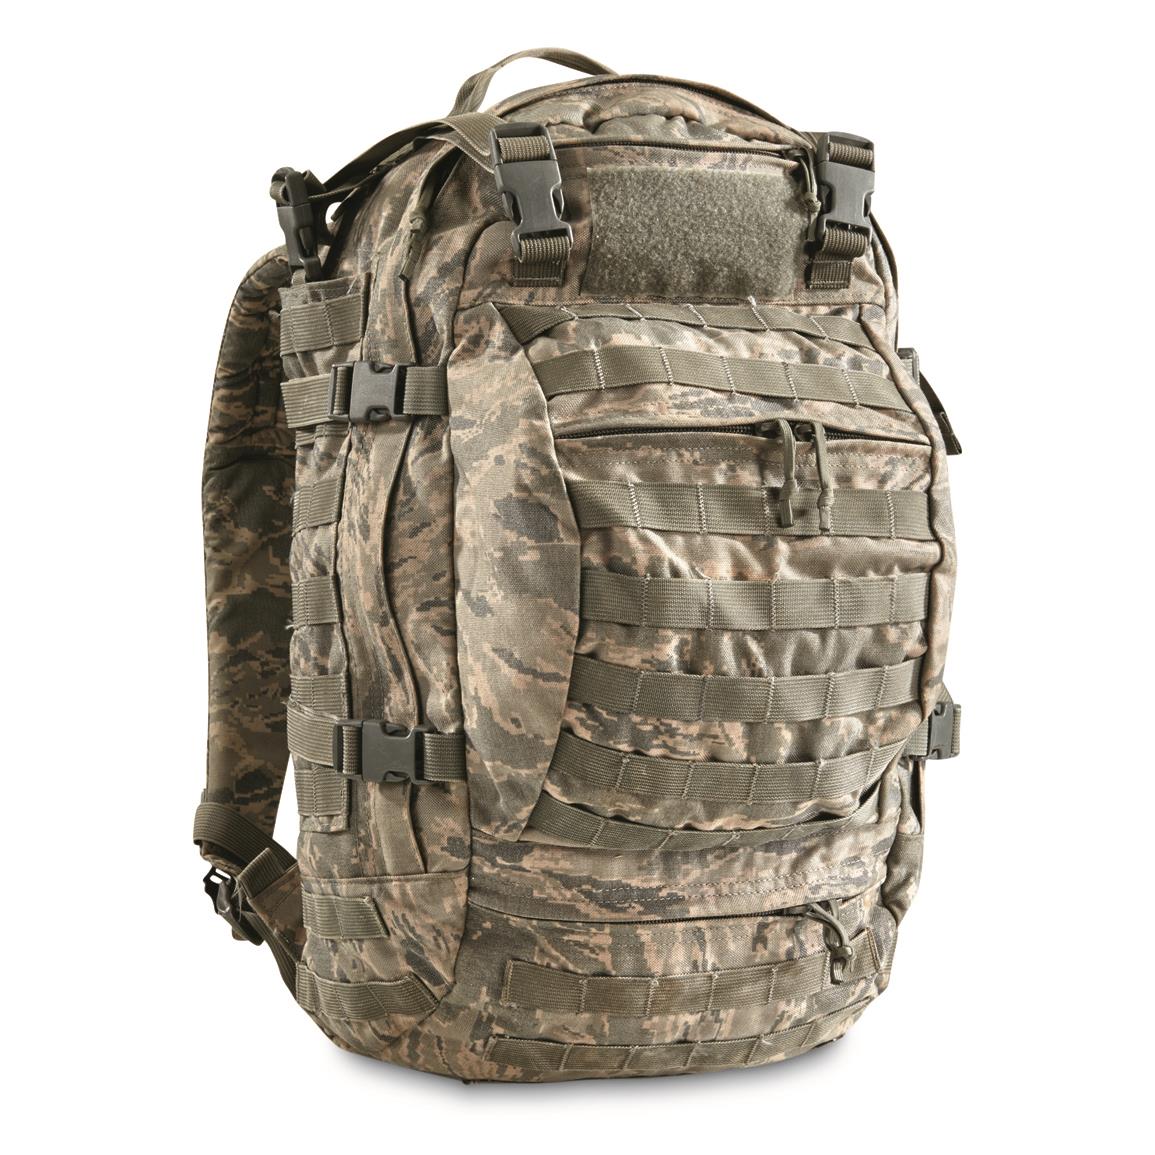 U.S. Military Surplus Multi-Mission Backpack, Used, ABU Camo